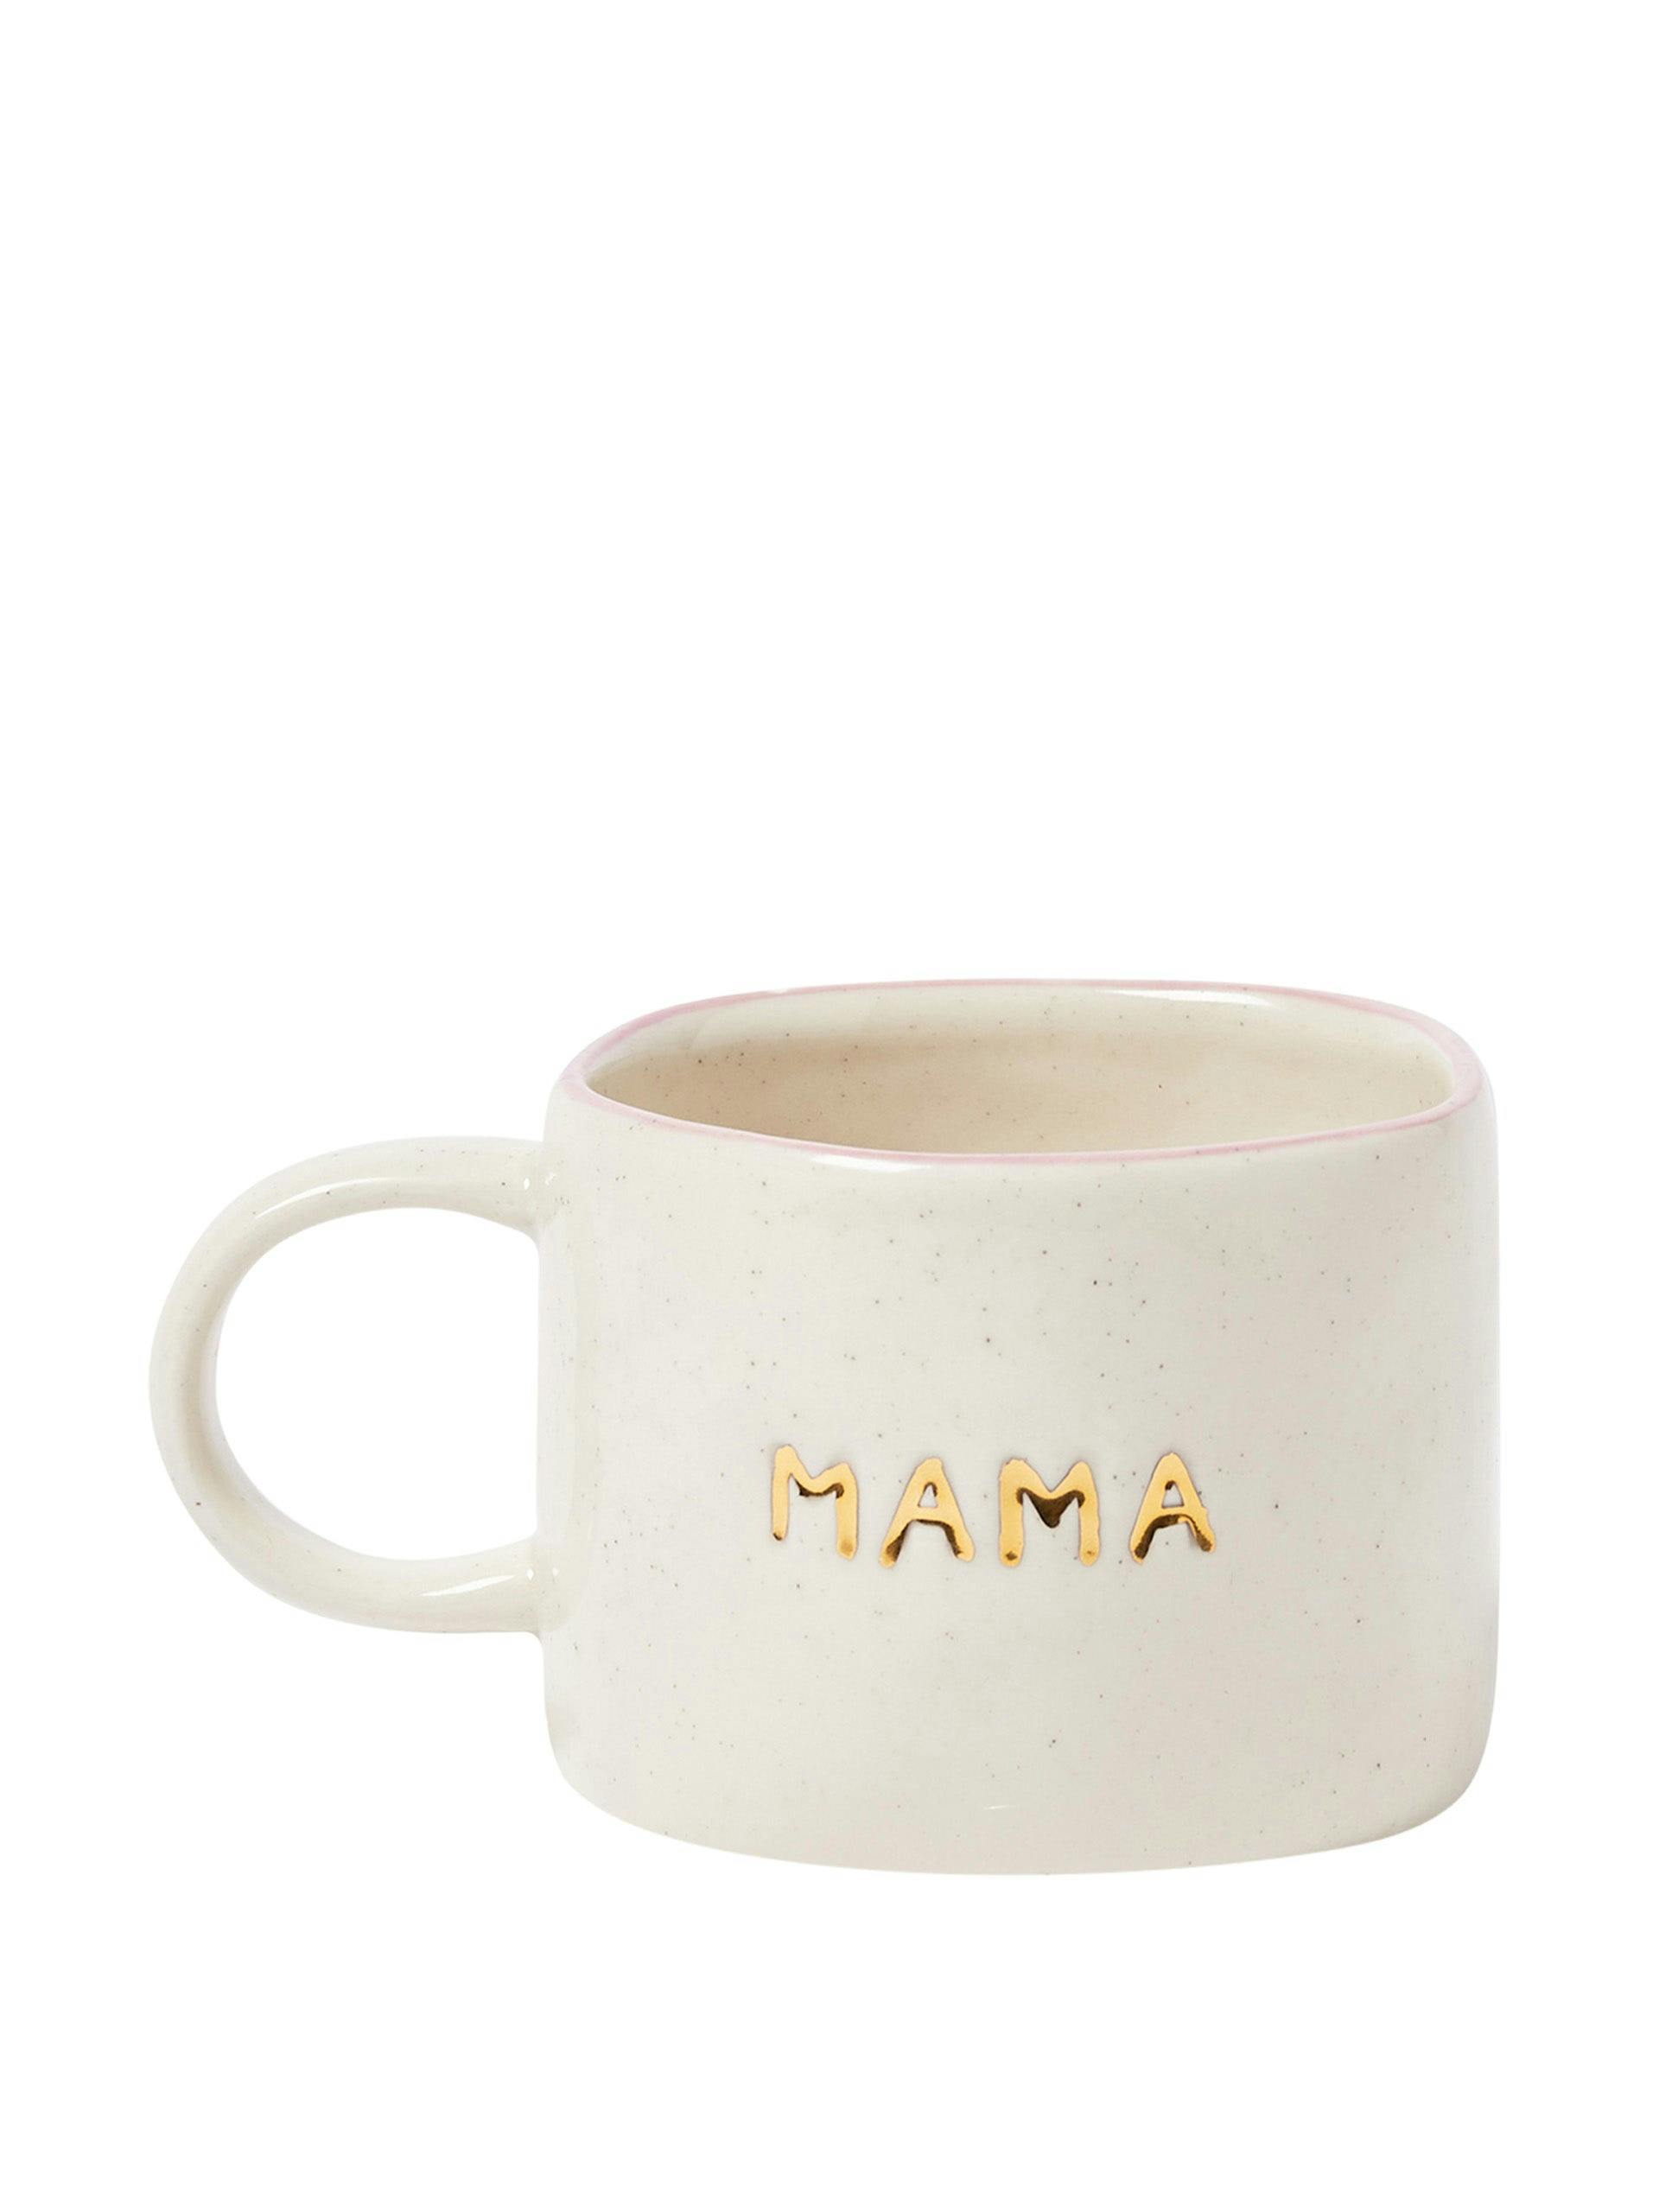 Mama wave rim ceramic mug